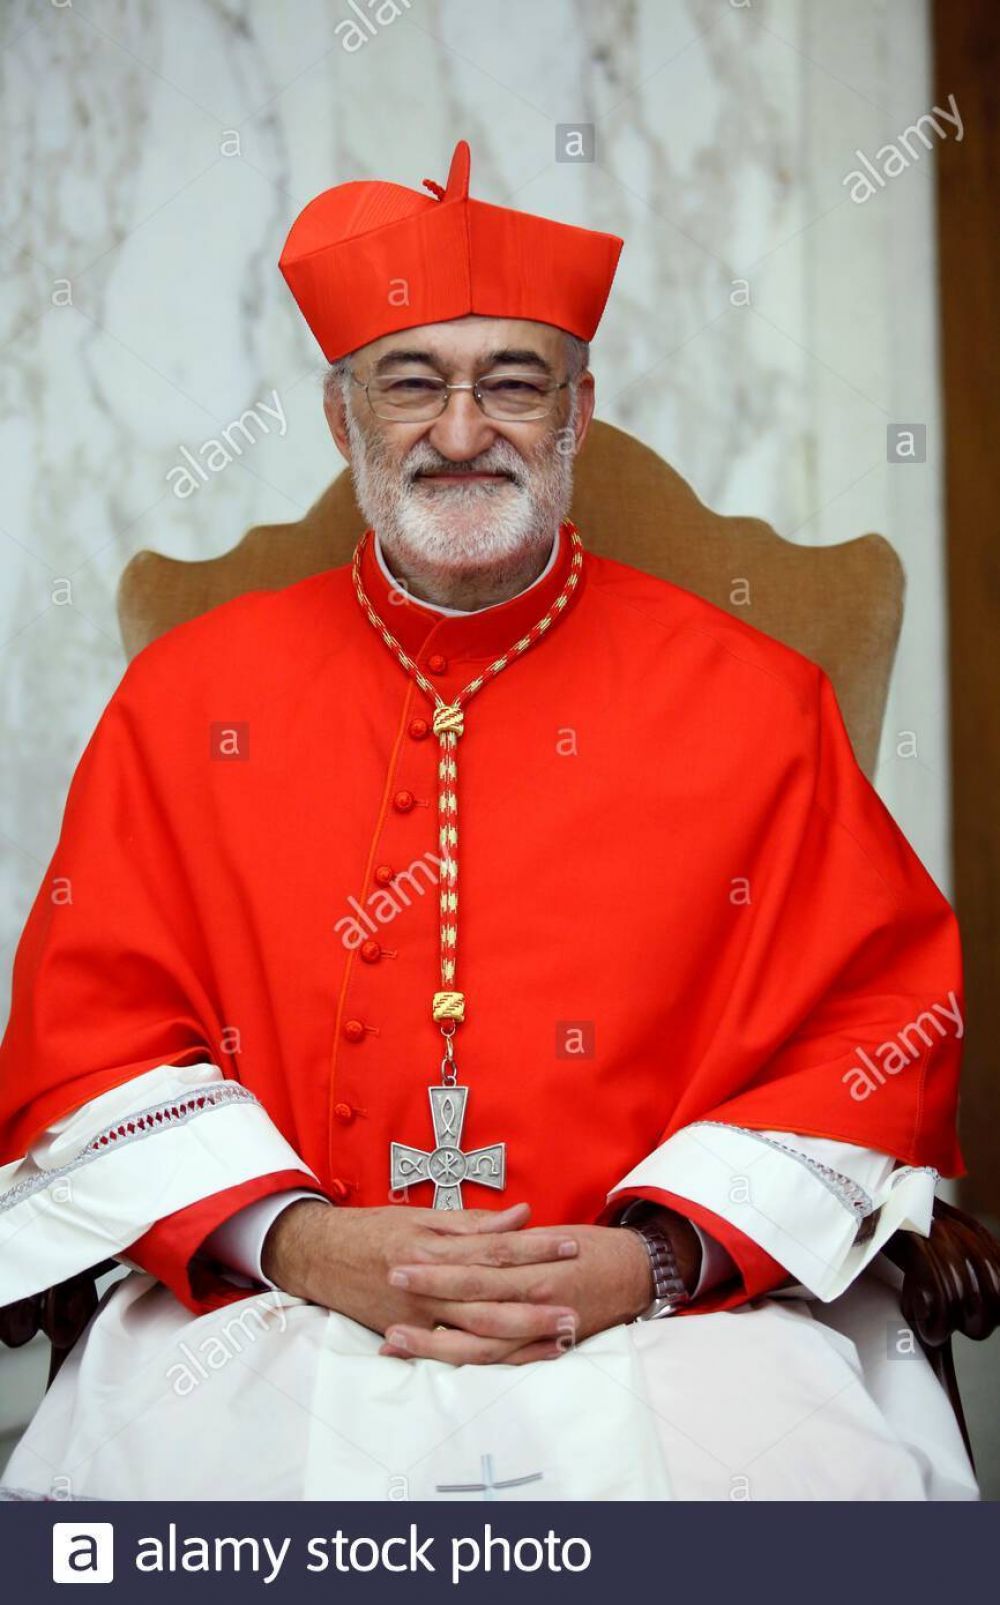  Declaraciones del Cardenal Cristbal Lpez Romero, Arzobispo de Rabat (Marruecos): Francisco ha iniciado esta nueva manera de ver la Iglesia en el mundo 